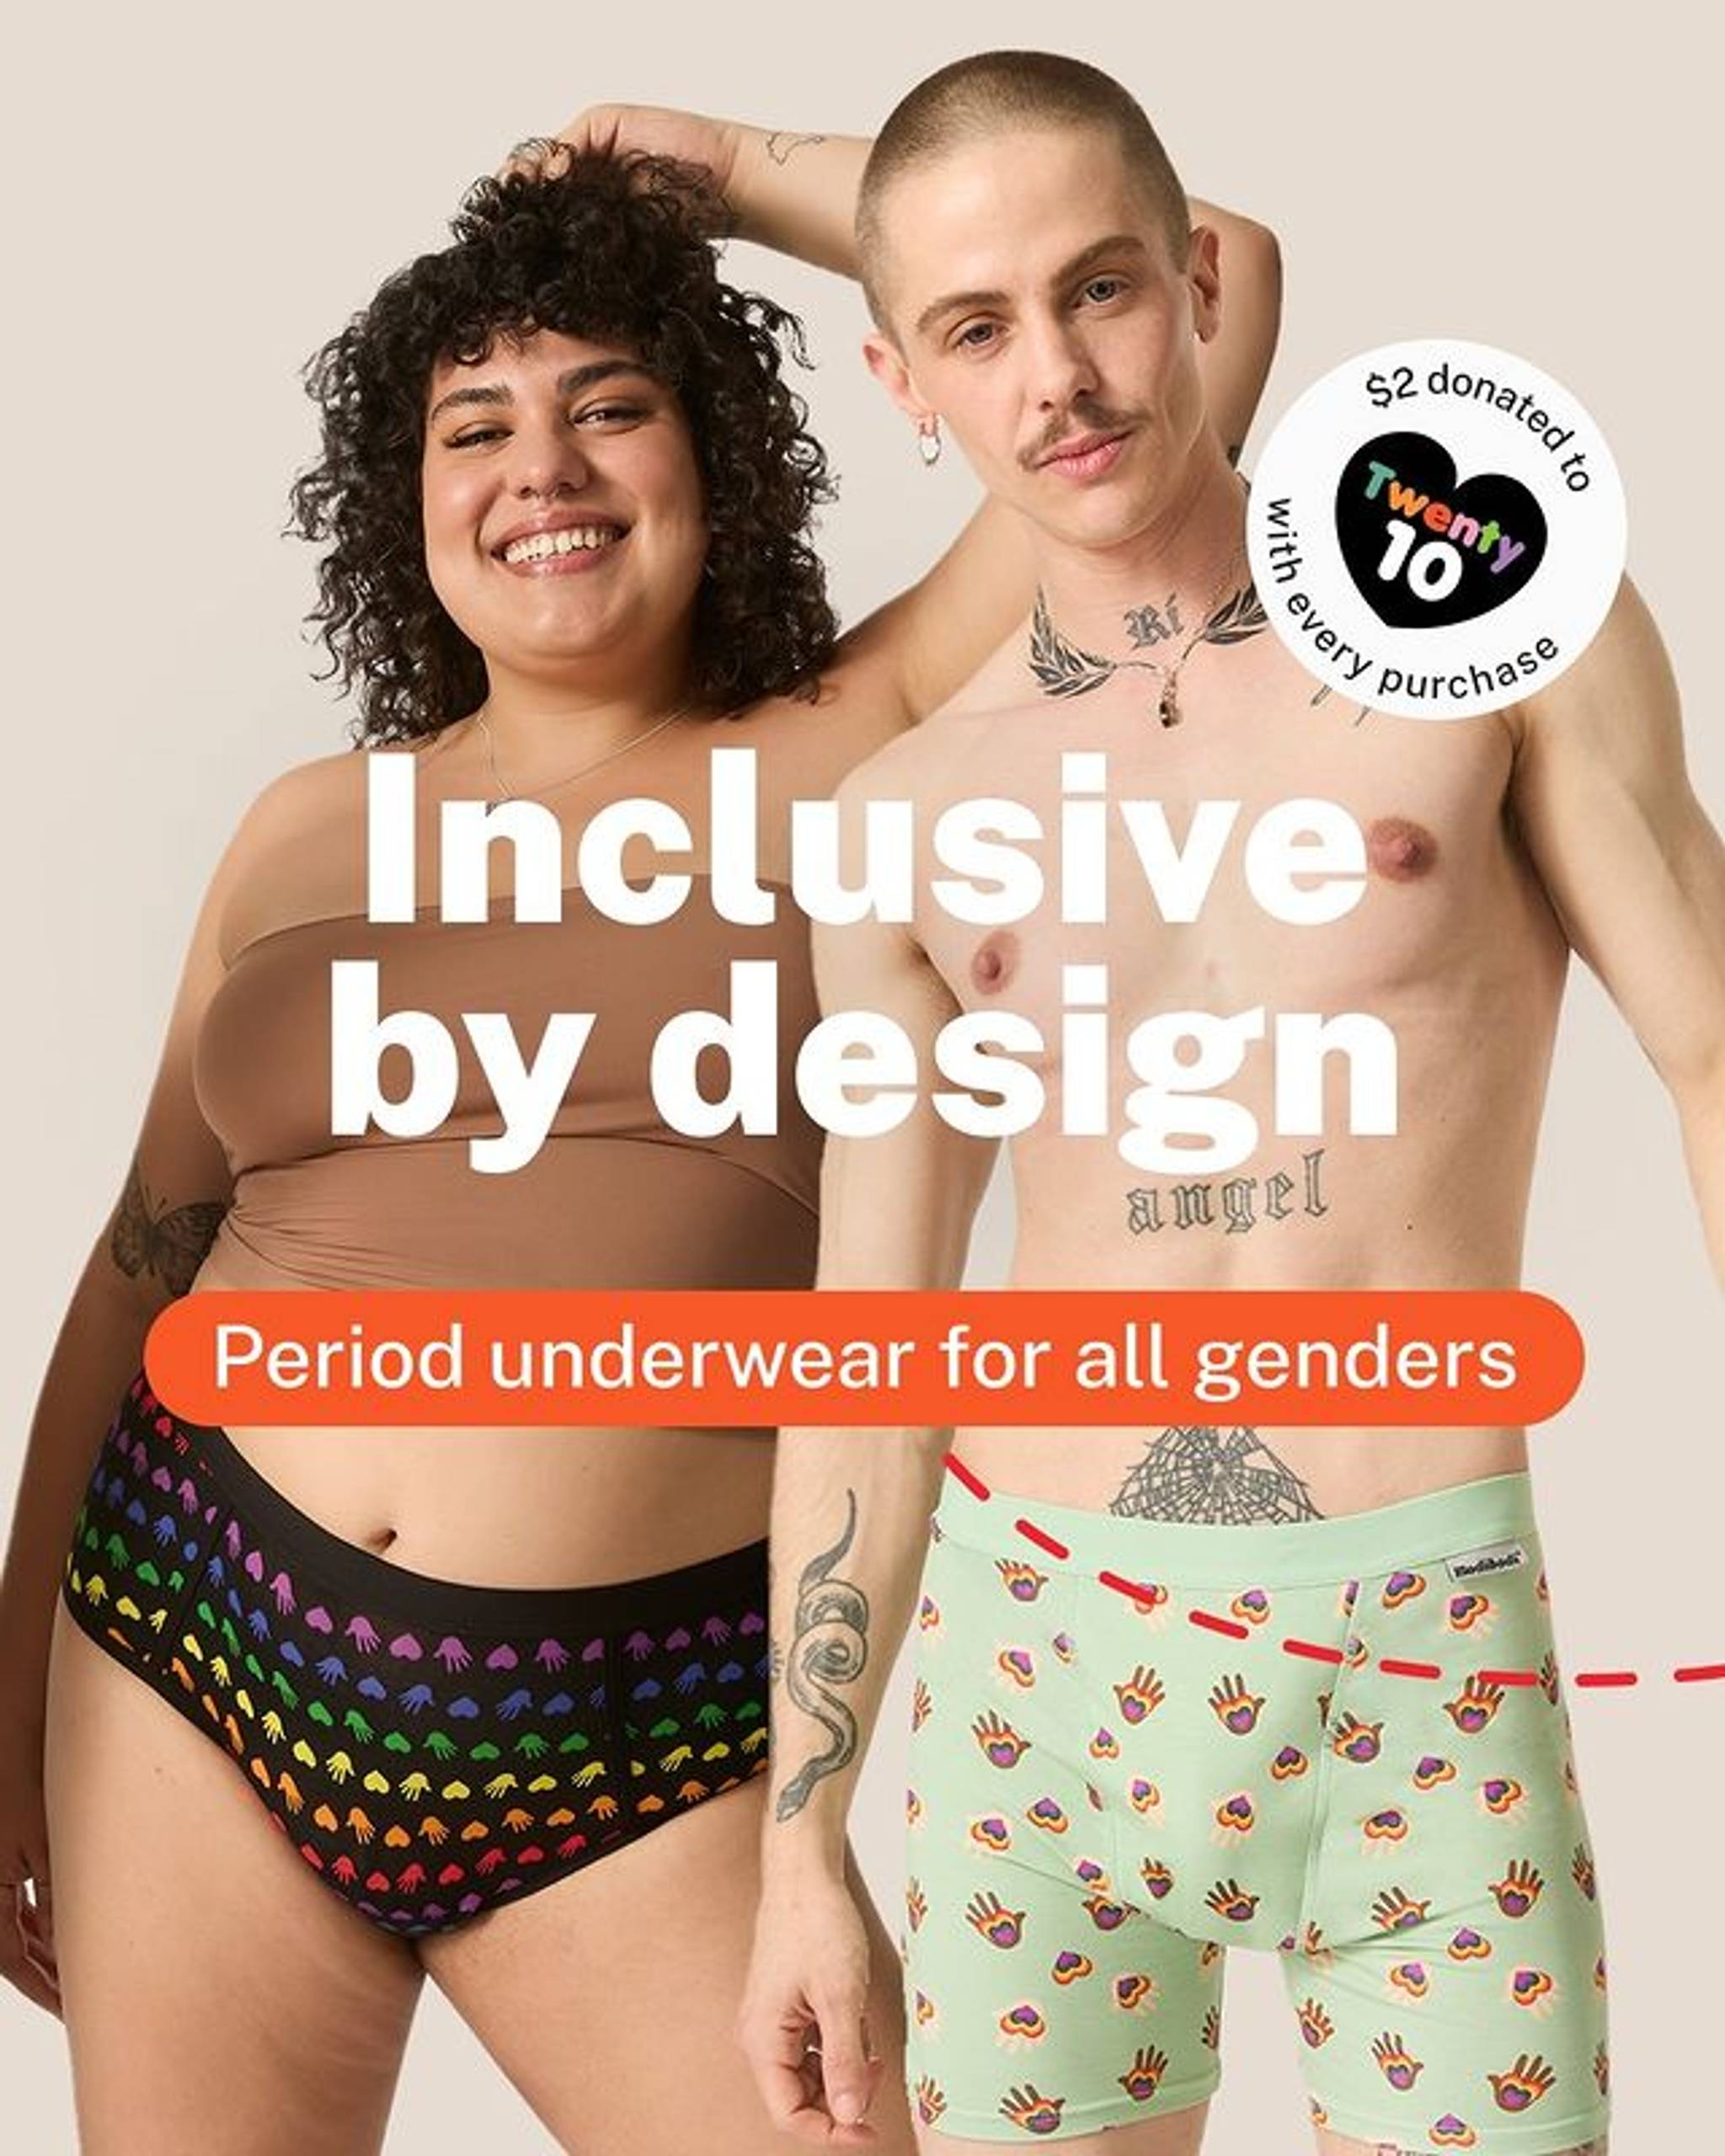 Modibodi unveils all-gender menstrual underwear